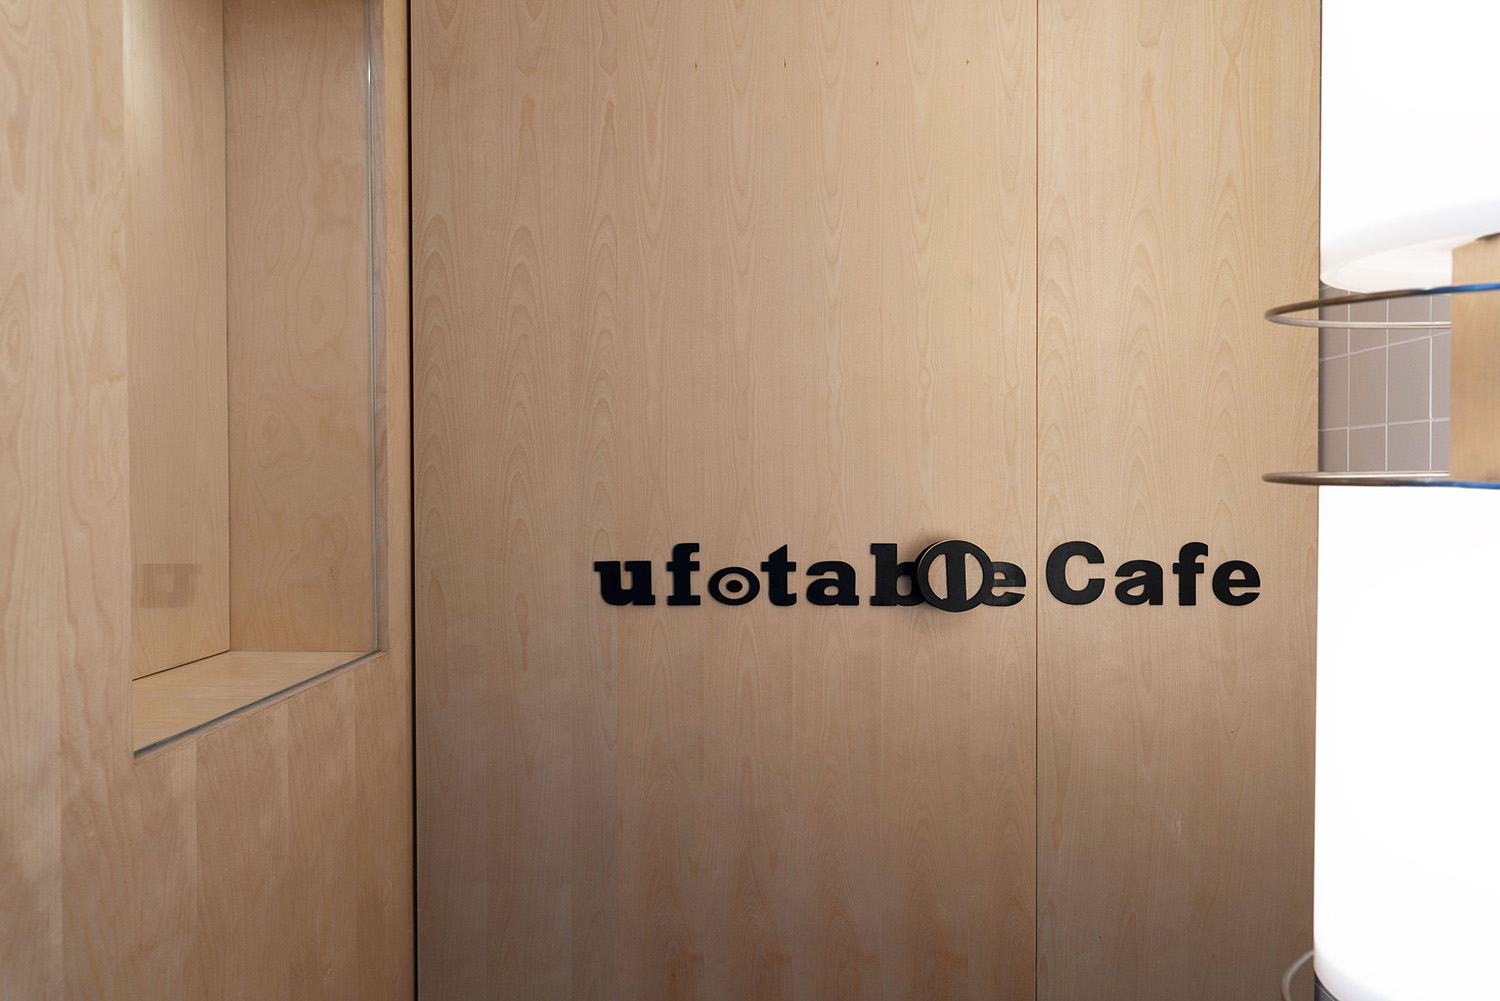 咖啡厅设计,茶饮店设计,咖啡馆设计,广州咖啡厅设计,广州咖啡厅,Ufotable Café,Ufotable,广州Ufotable Café,咖啡厅设计案例,内向工作室,内向设计,Non Studio Design & Research